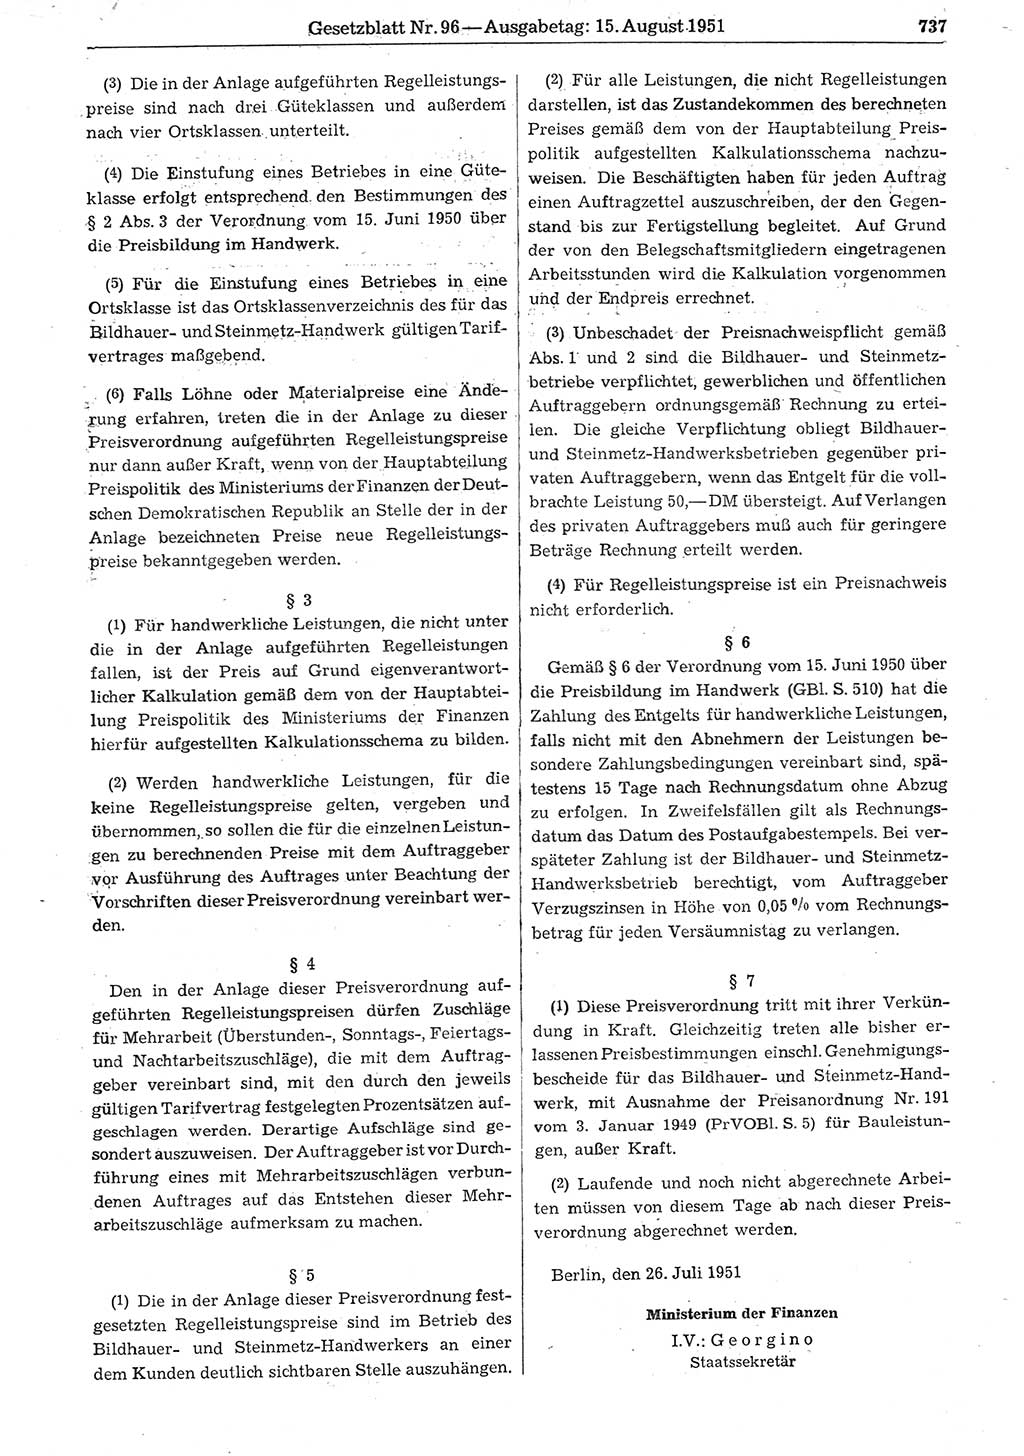 Gesetzblatt (GBl.) der Deutschen Demokratischen Republik (DDR) 1951, Seite 737 (GBl. DDR 1951, S. 737)